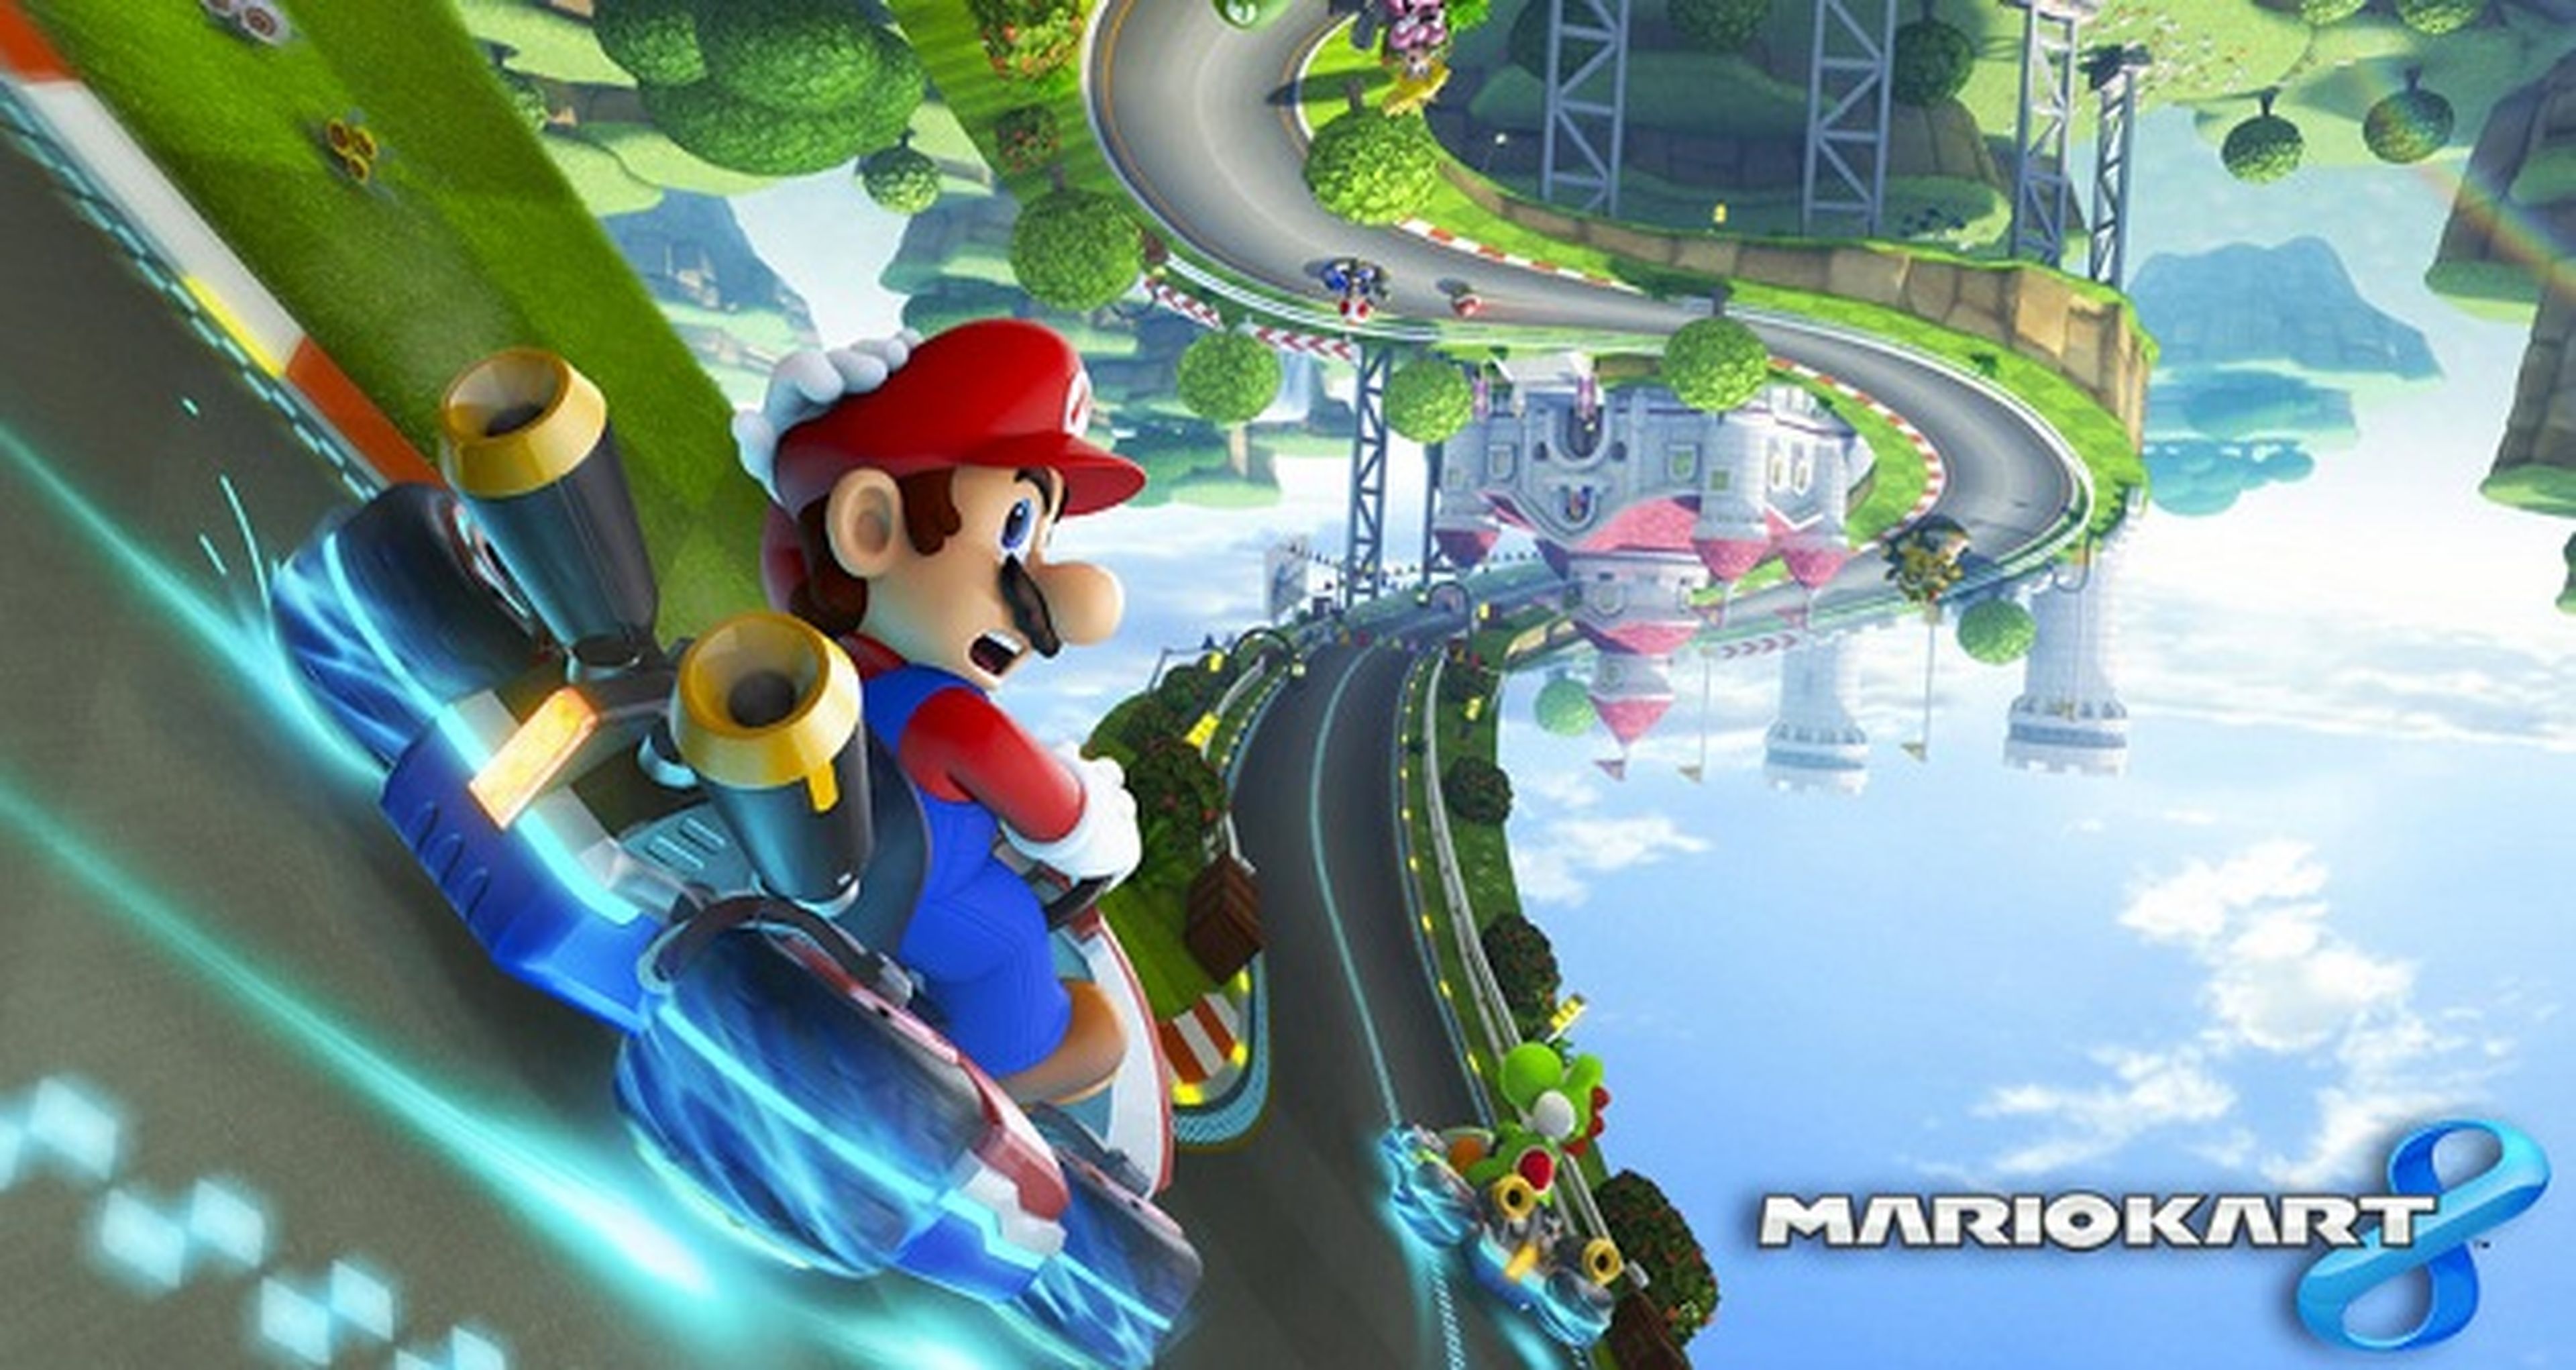 Descubre dónde probar Mario Kart 8 antes de su salida